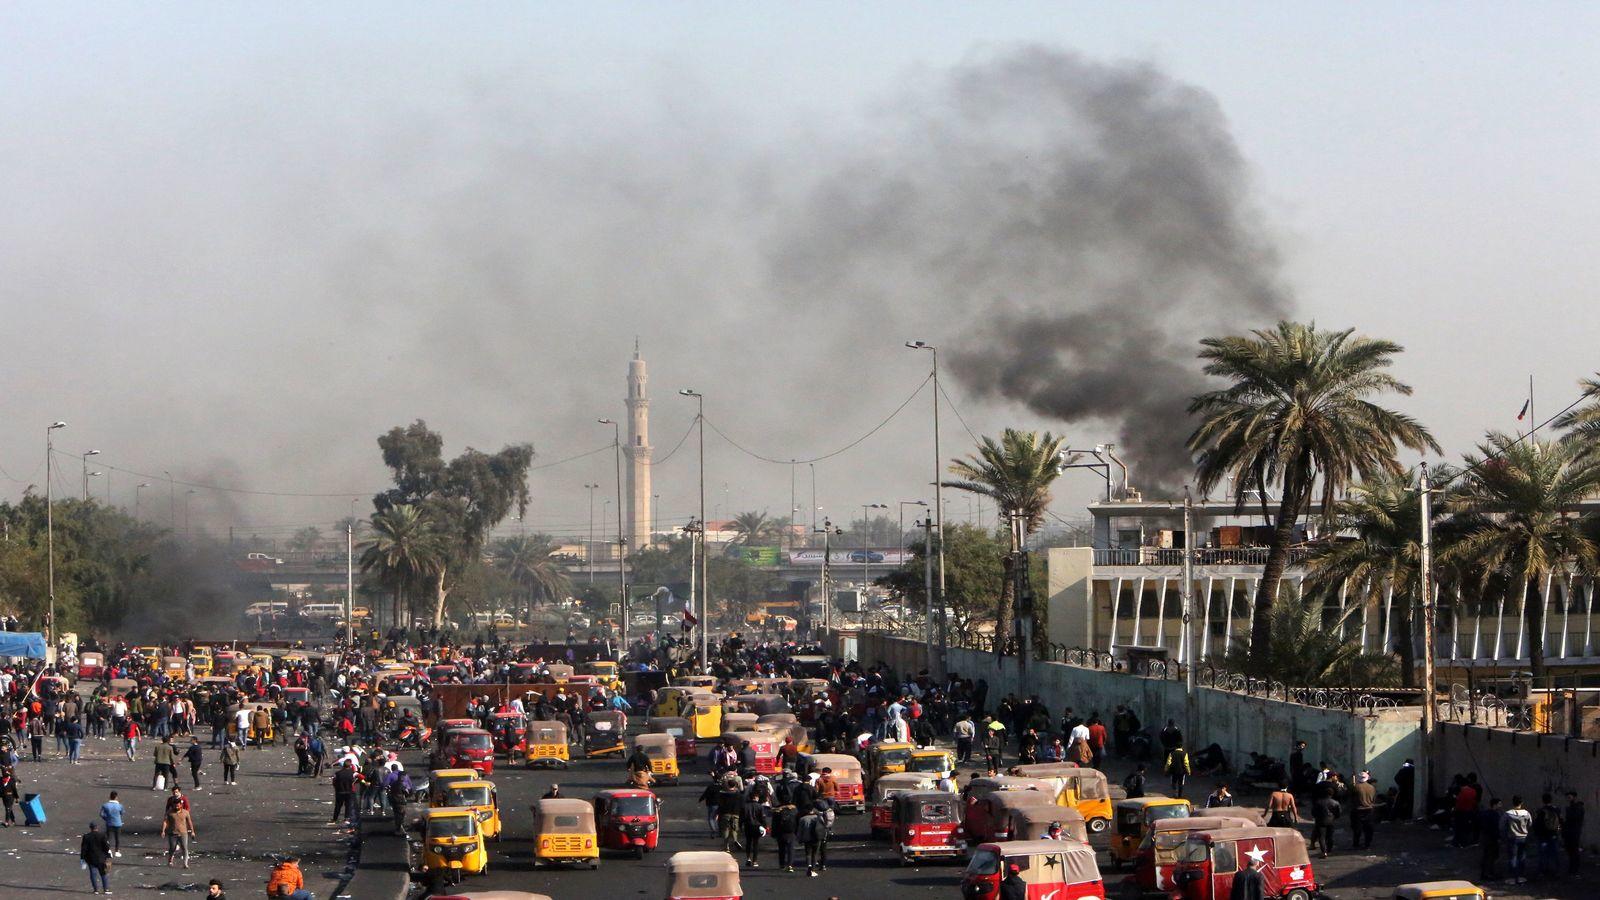 إطلاق صاروخين قرب السفارة الأمريكية في المنطقة الخضراء ببغداد